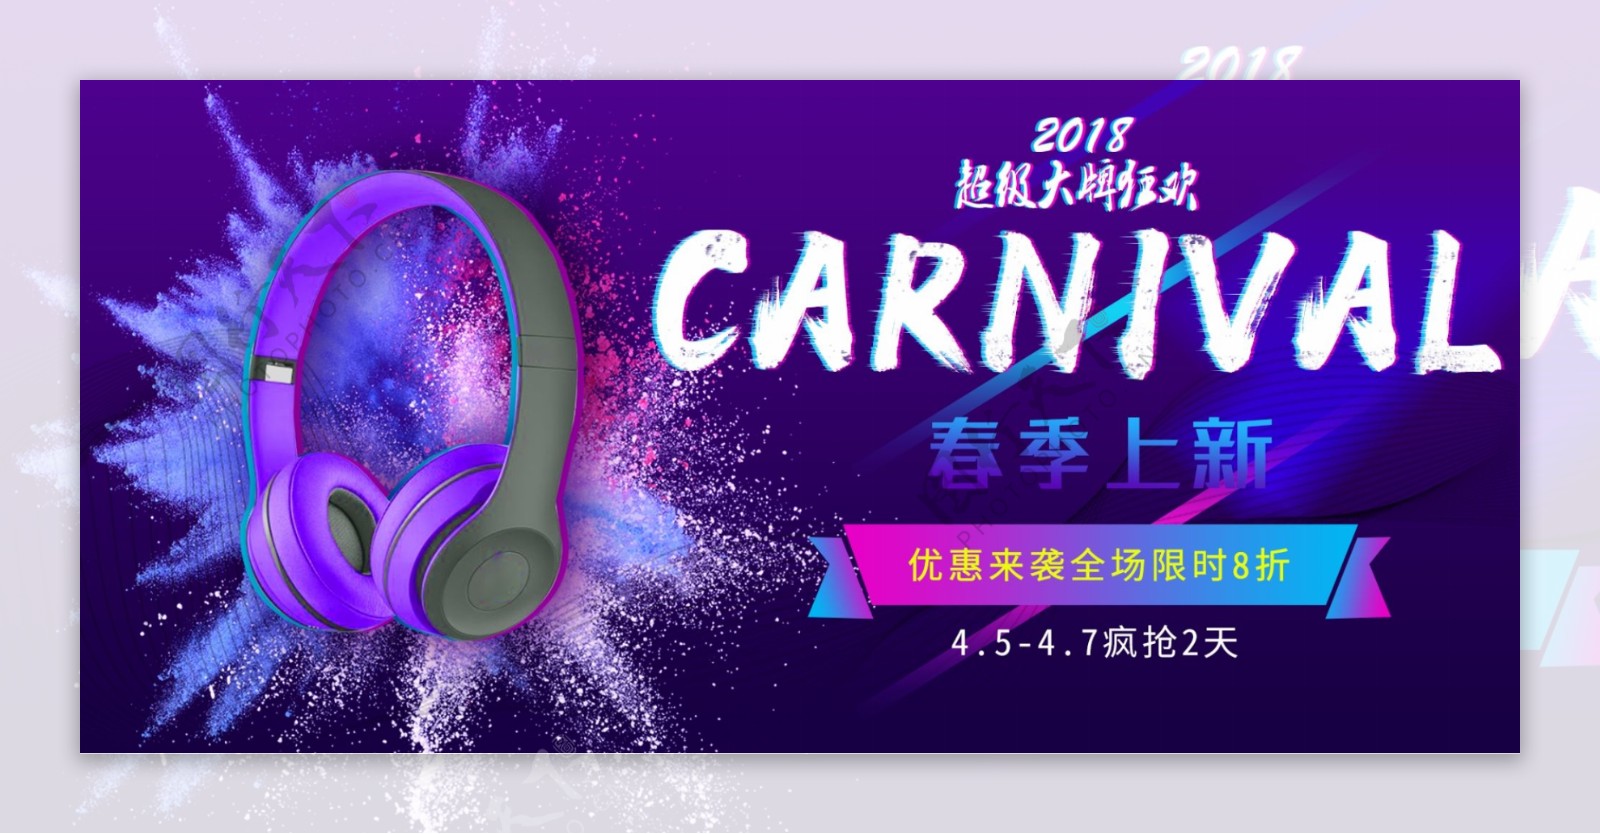 超级大牌狂欢紫色故障风耳机数码产品海报